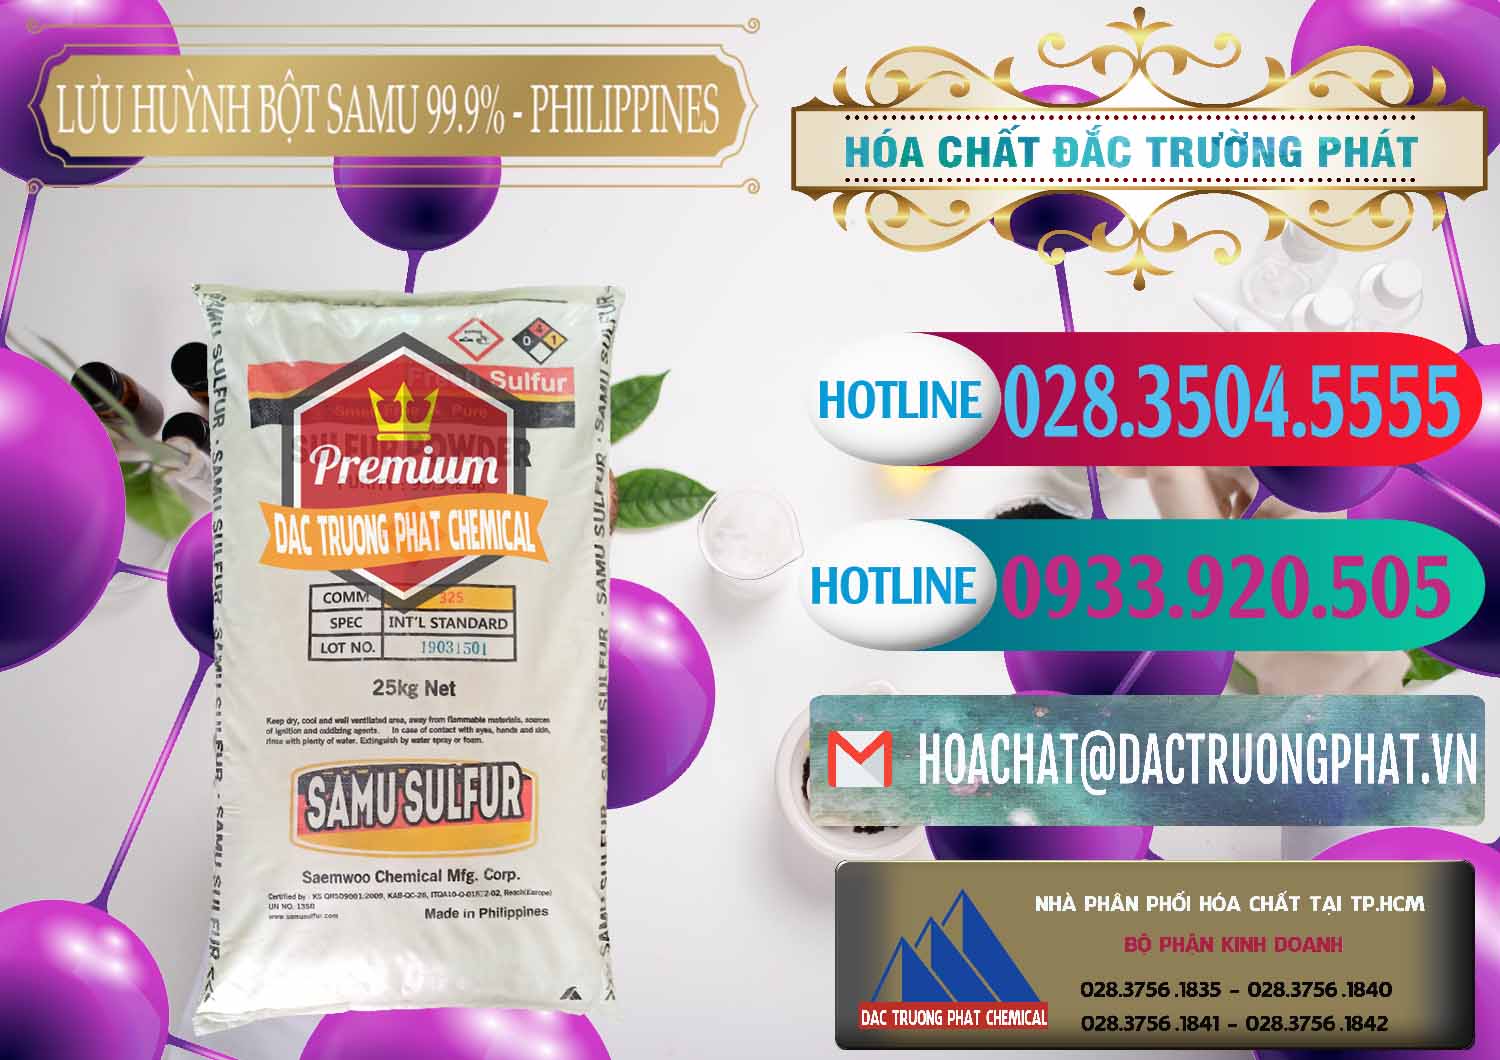 Nơi kinh doanh _ bán Lưu huỳnh Bột - Sulfur Powder Samu Philippines - 0201 - Chuyên bán ( phân phối ) hóa chất tại TP.HCM - truongphat.vn